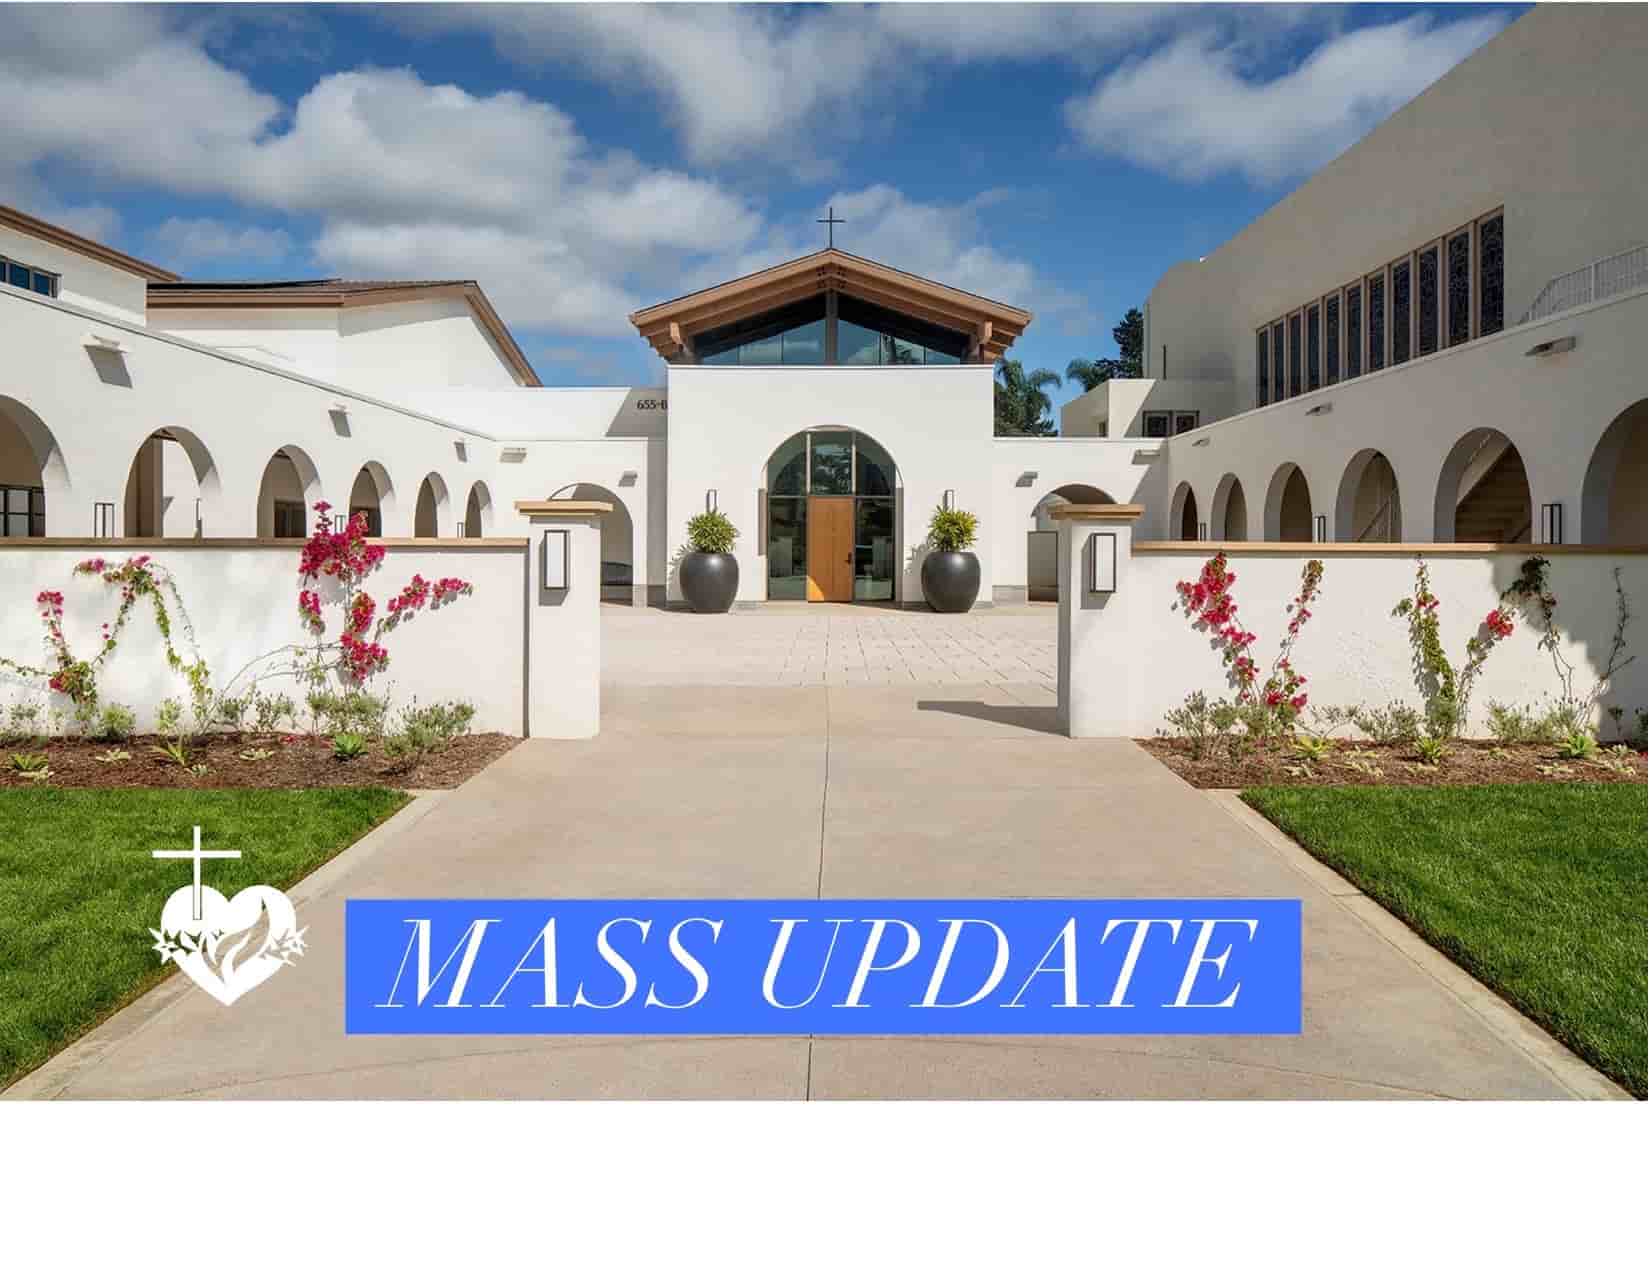 Mass Update